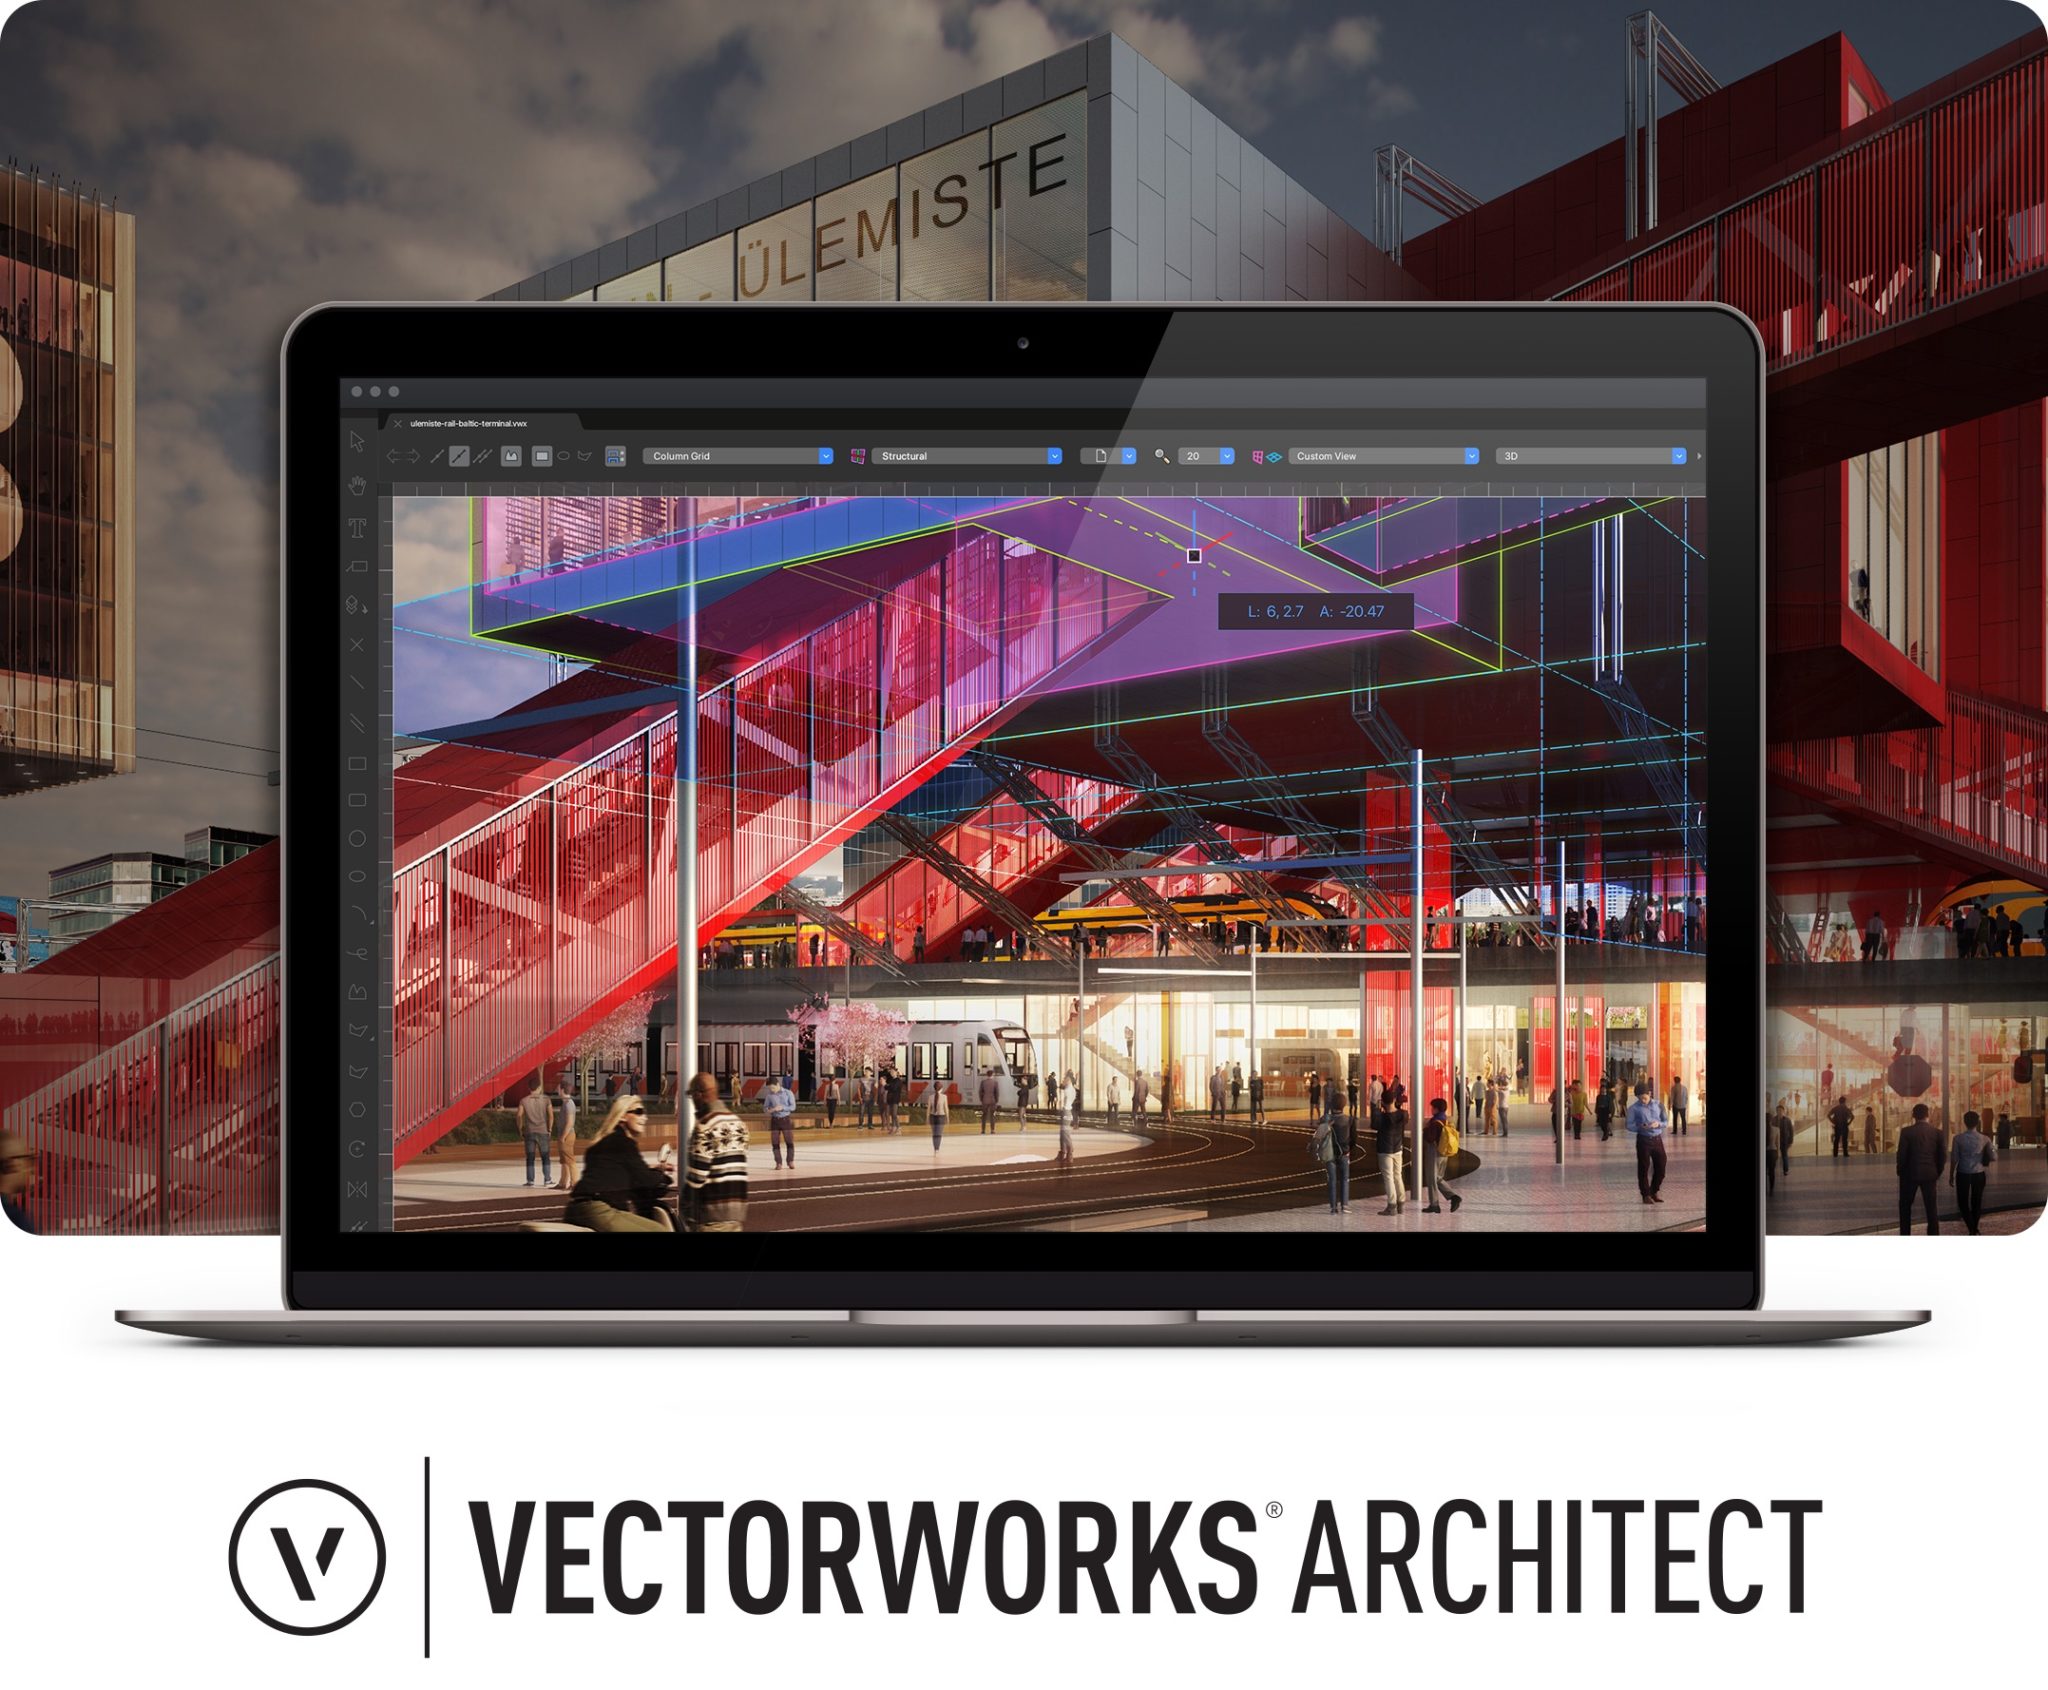 vectorworks 2021 full